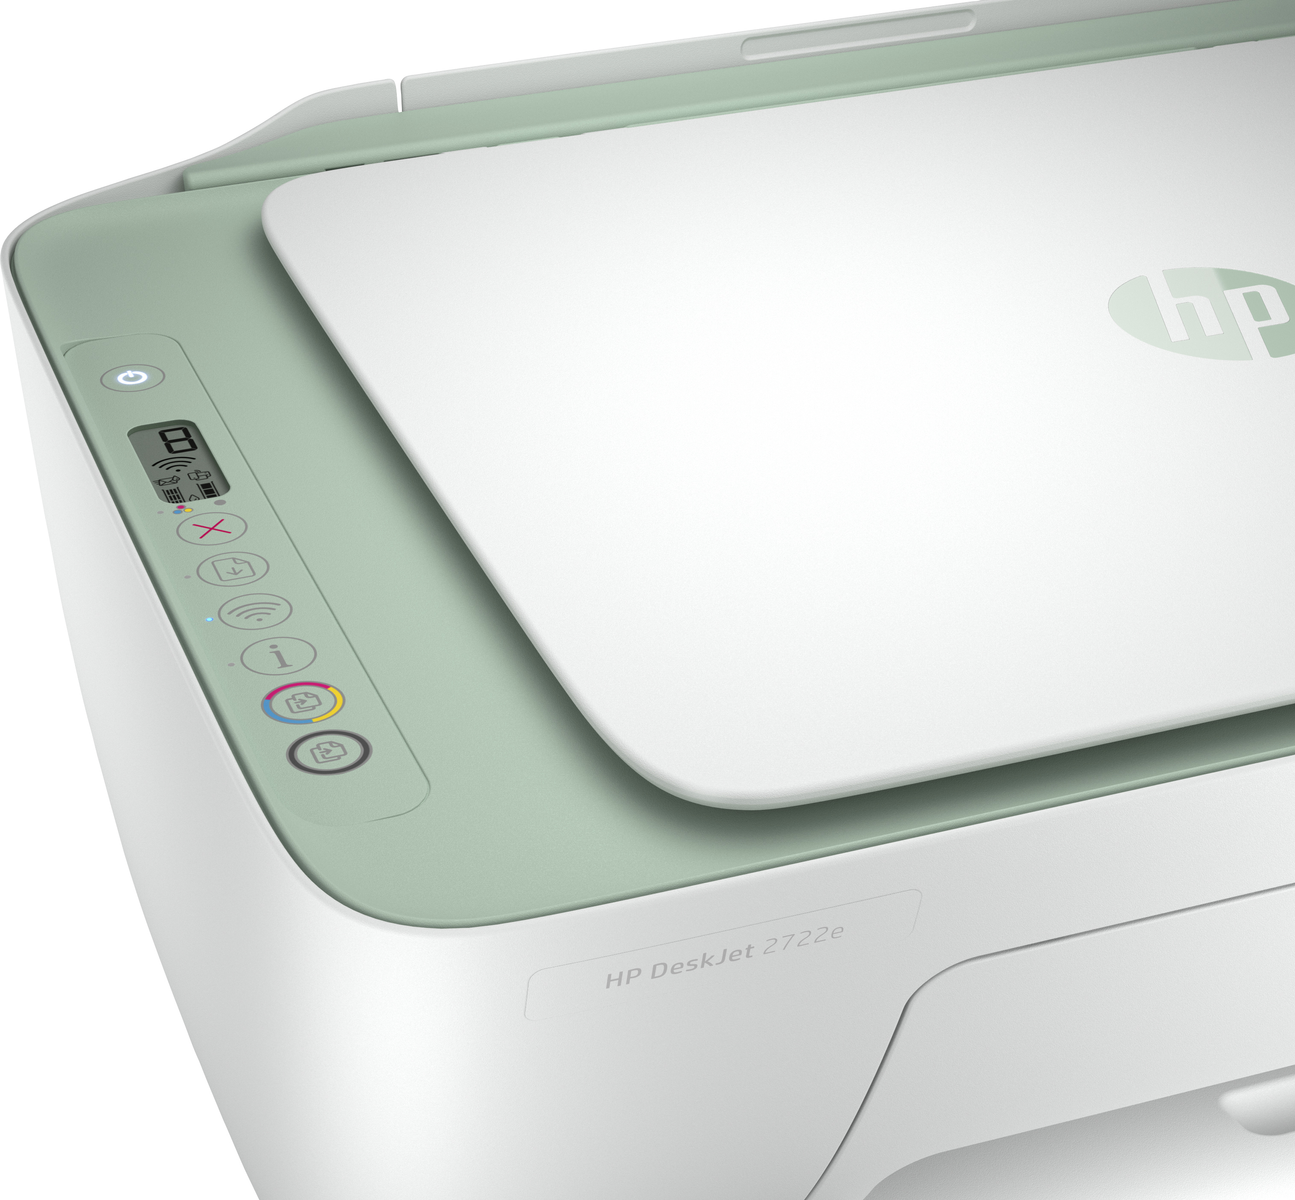 HP DeskJet 2722e Inkjet WLAN Multifunktionsdrucker